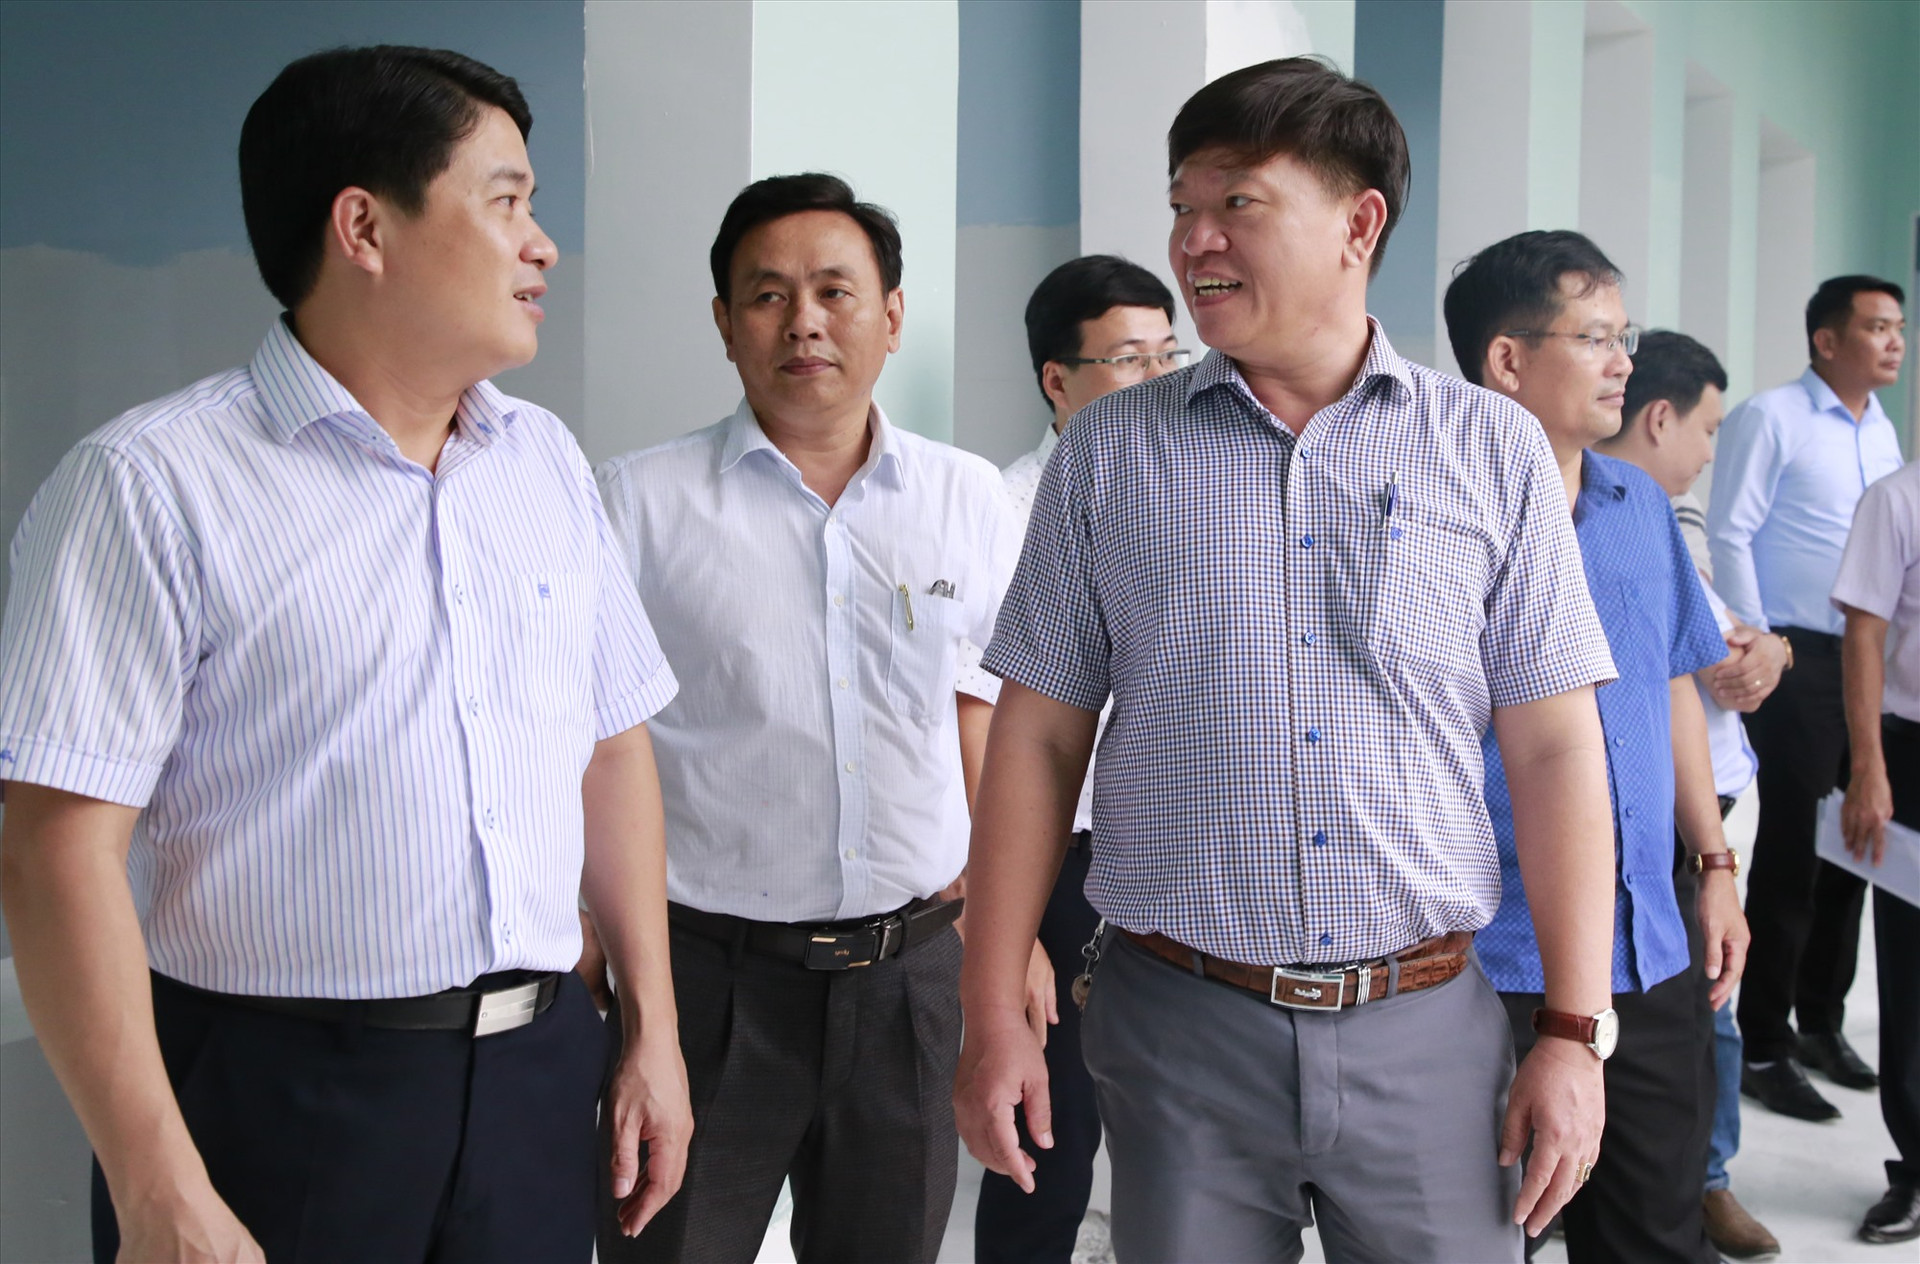 Đồng chí Trần Văn Tân cùng đoàn làm việc kiểm tra tiến độ thi công công trình Trung tâm Y tế Phước Sơn. Ảnh: T.C